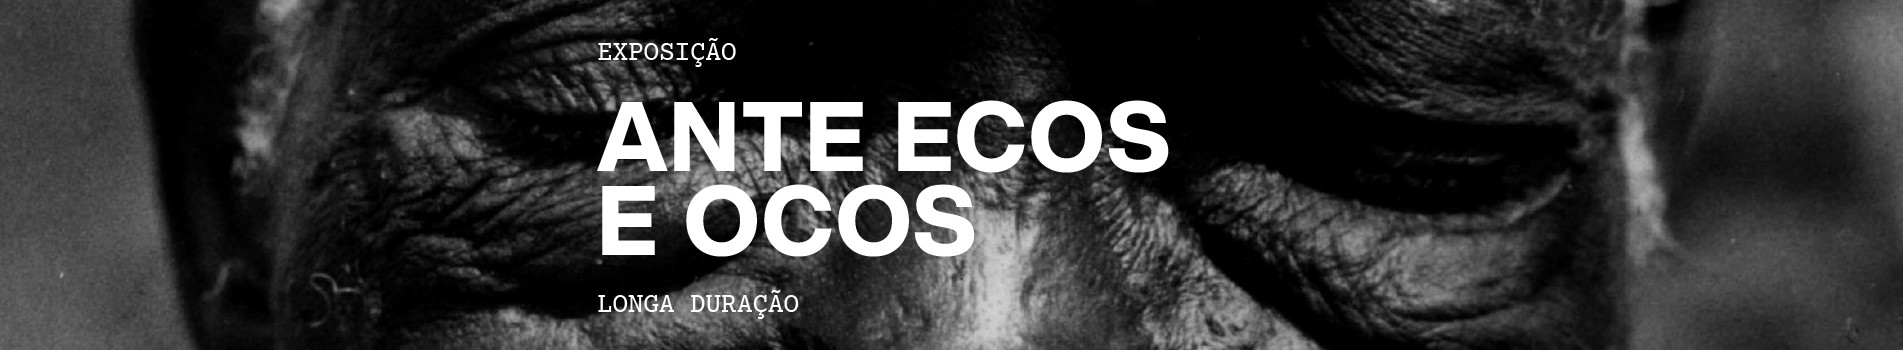 Banner superior exposição "Ante ecos e ocos"